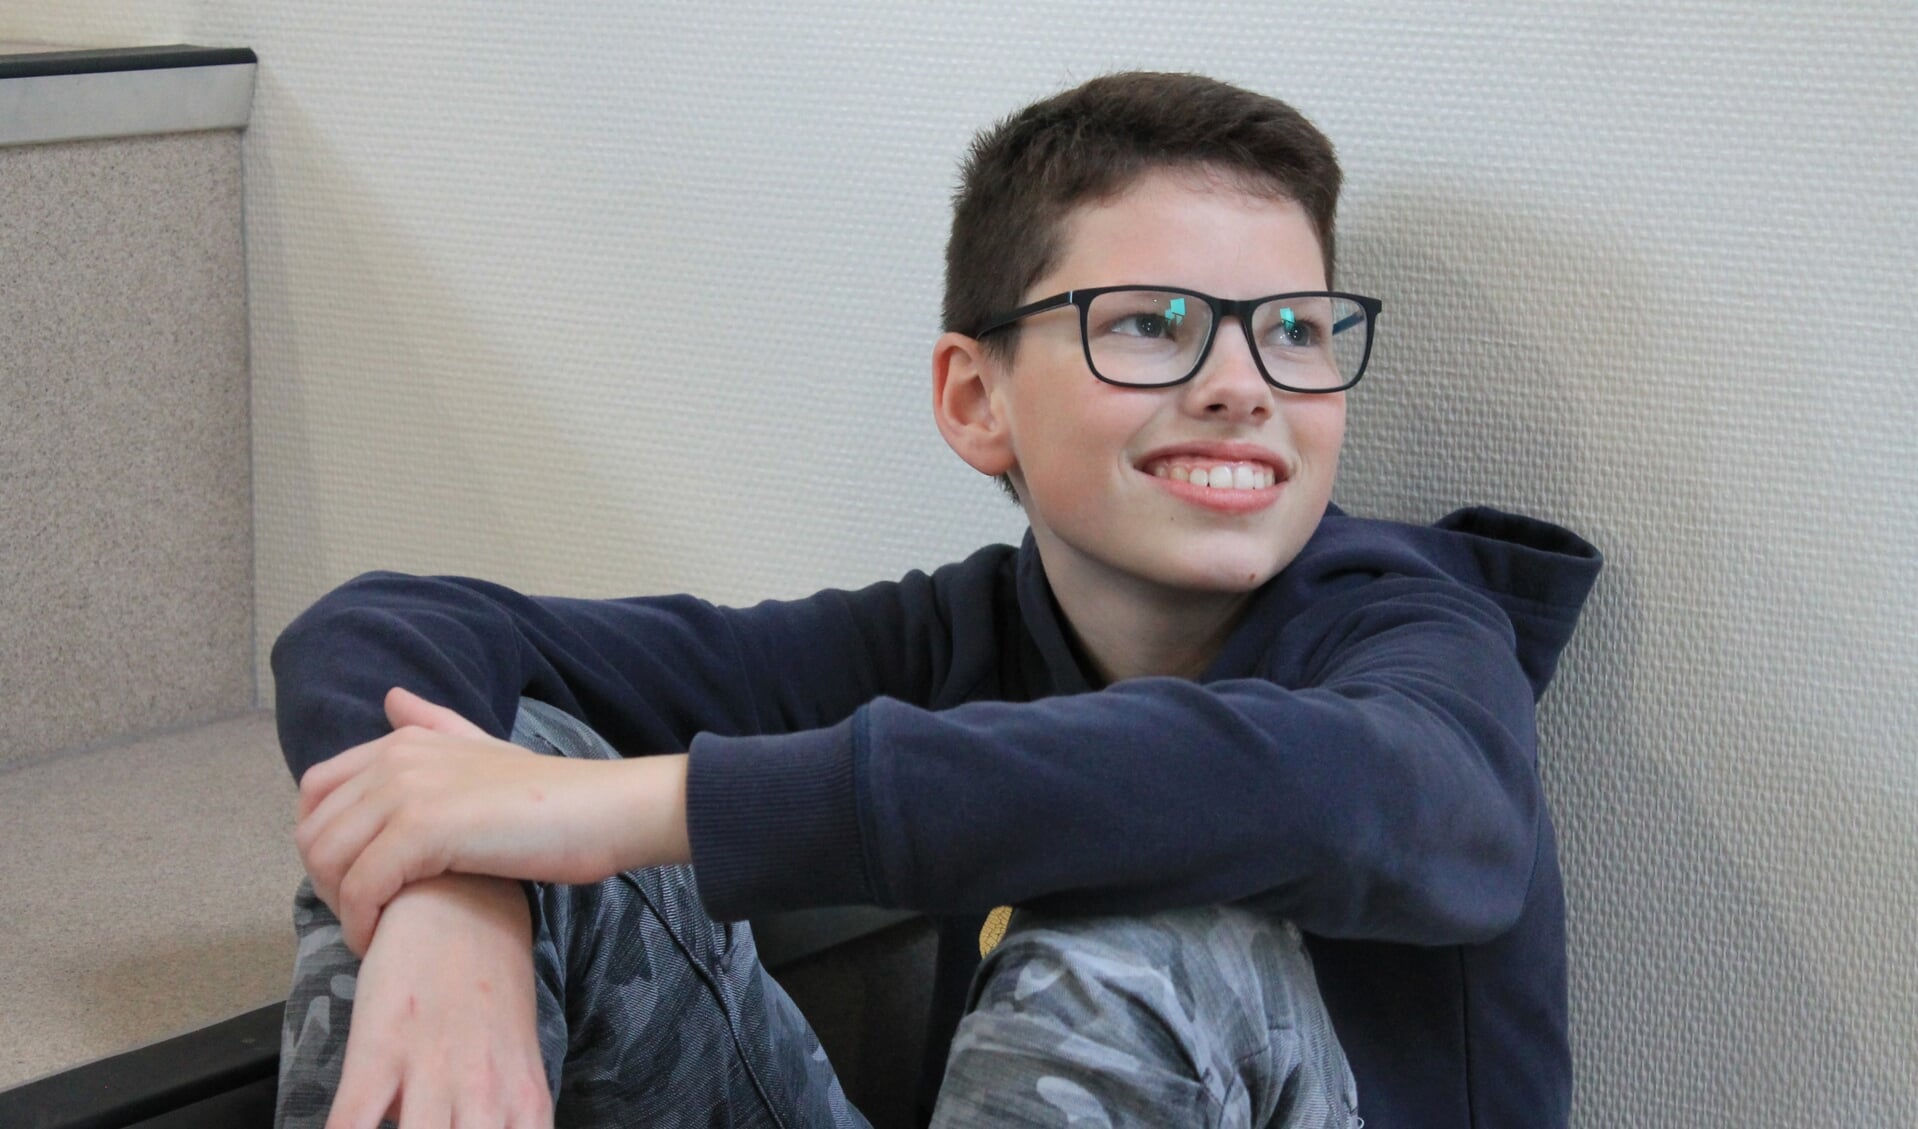 De 14-jarige Kjell speelt de Duitse jongen Bruno, een rol die hij na de repetities goed kan loslaten. 